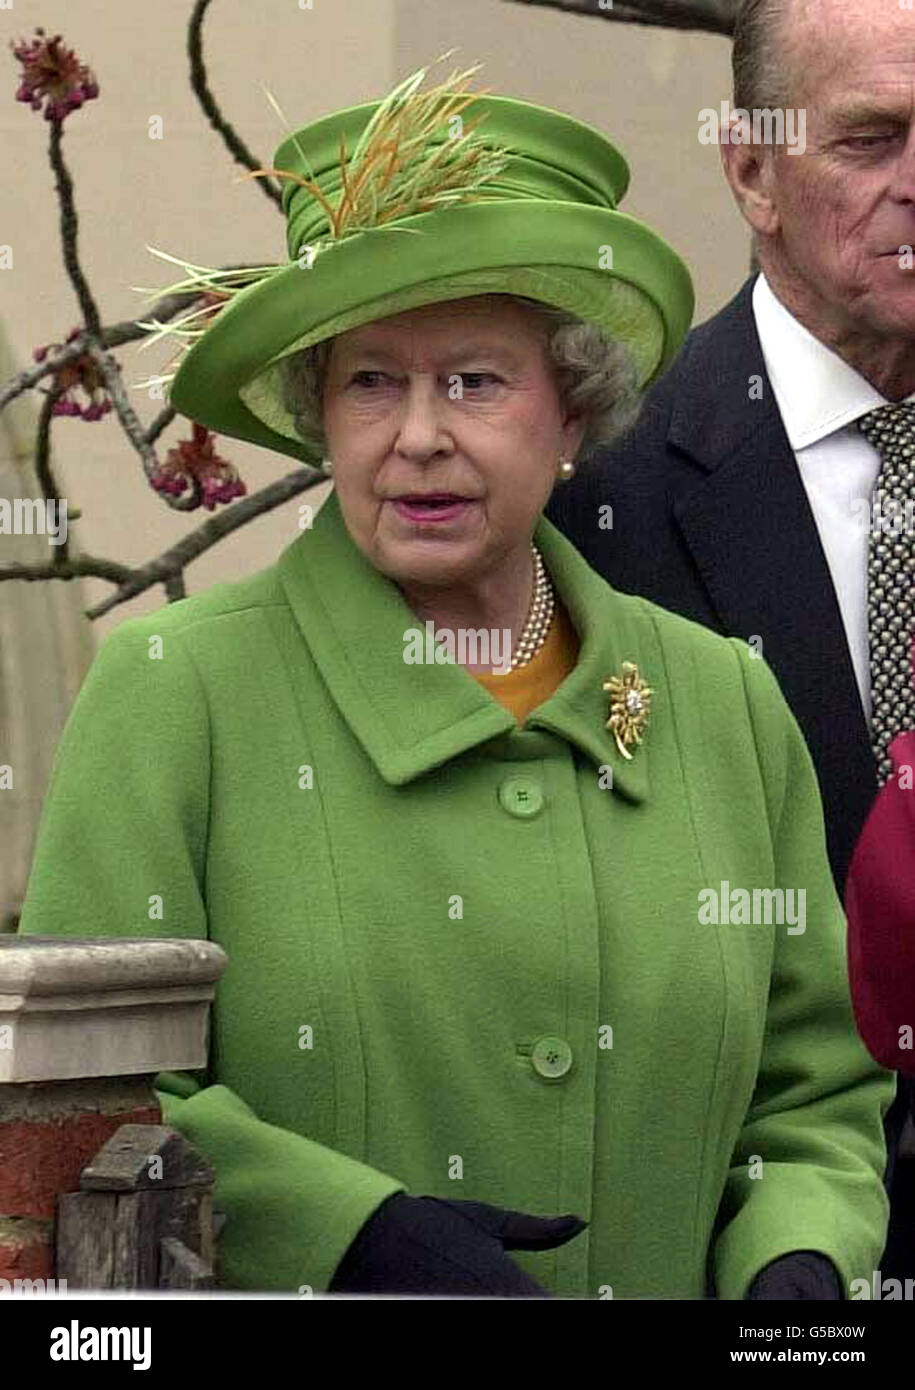 La reine Elizabeth II part après le service du dimanche de Pâques à la chapelle Saint-Georges, au château de Windsor. Plus tôt, la Reine, vêtue d'une tenue vert lime avec chapeau assorti, a ondulé à des centaines de fans d'attente avant de diriger le chemin vers l'église. Banque D'Images